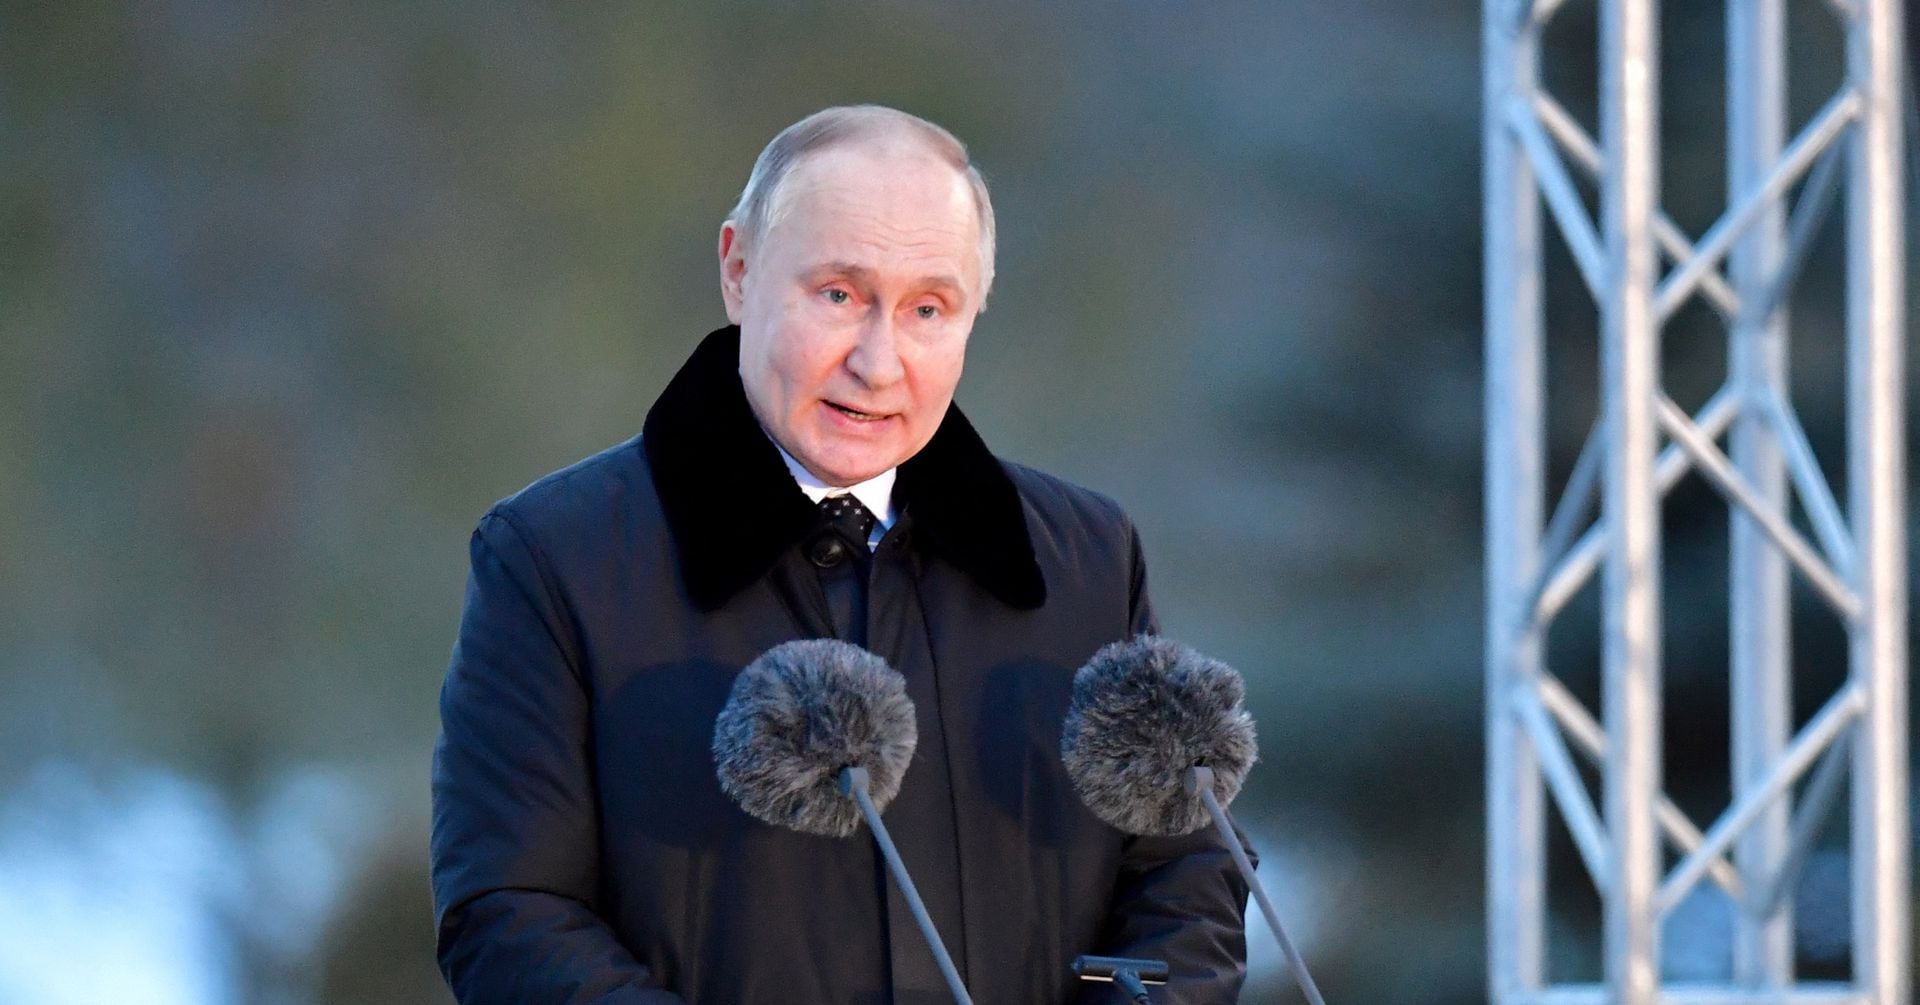 プーチン氏、欧州諸国はロシア嫌悪が国策と非難 第二次大戦関連式典で